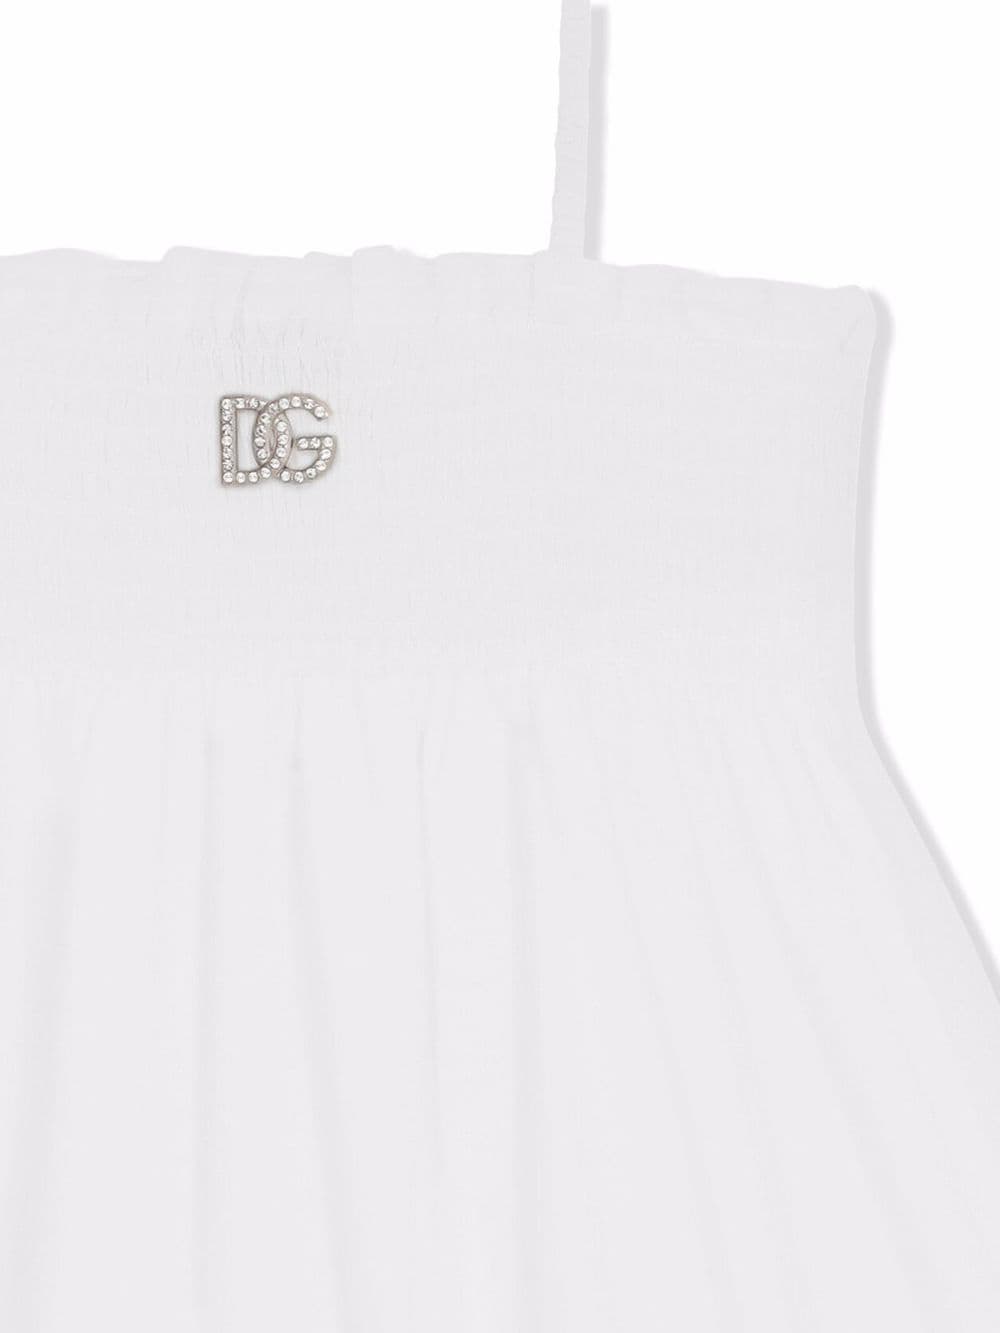 DOLCE & GABBANA KIDS Logo Dress White - MAISONDEFASHION.COM